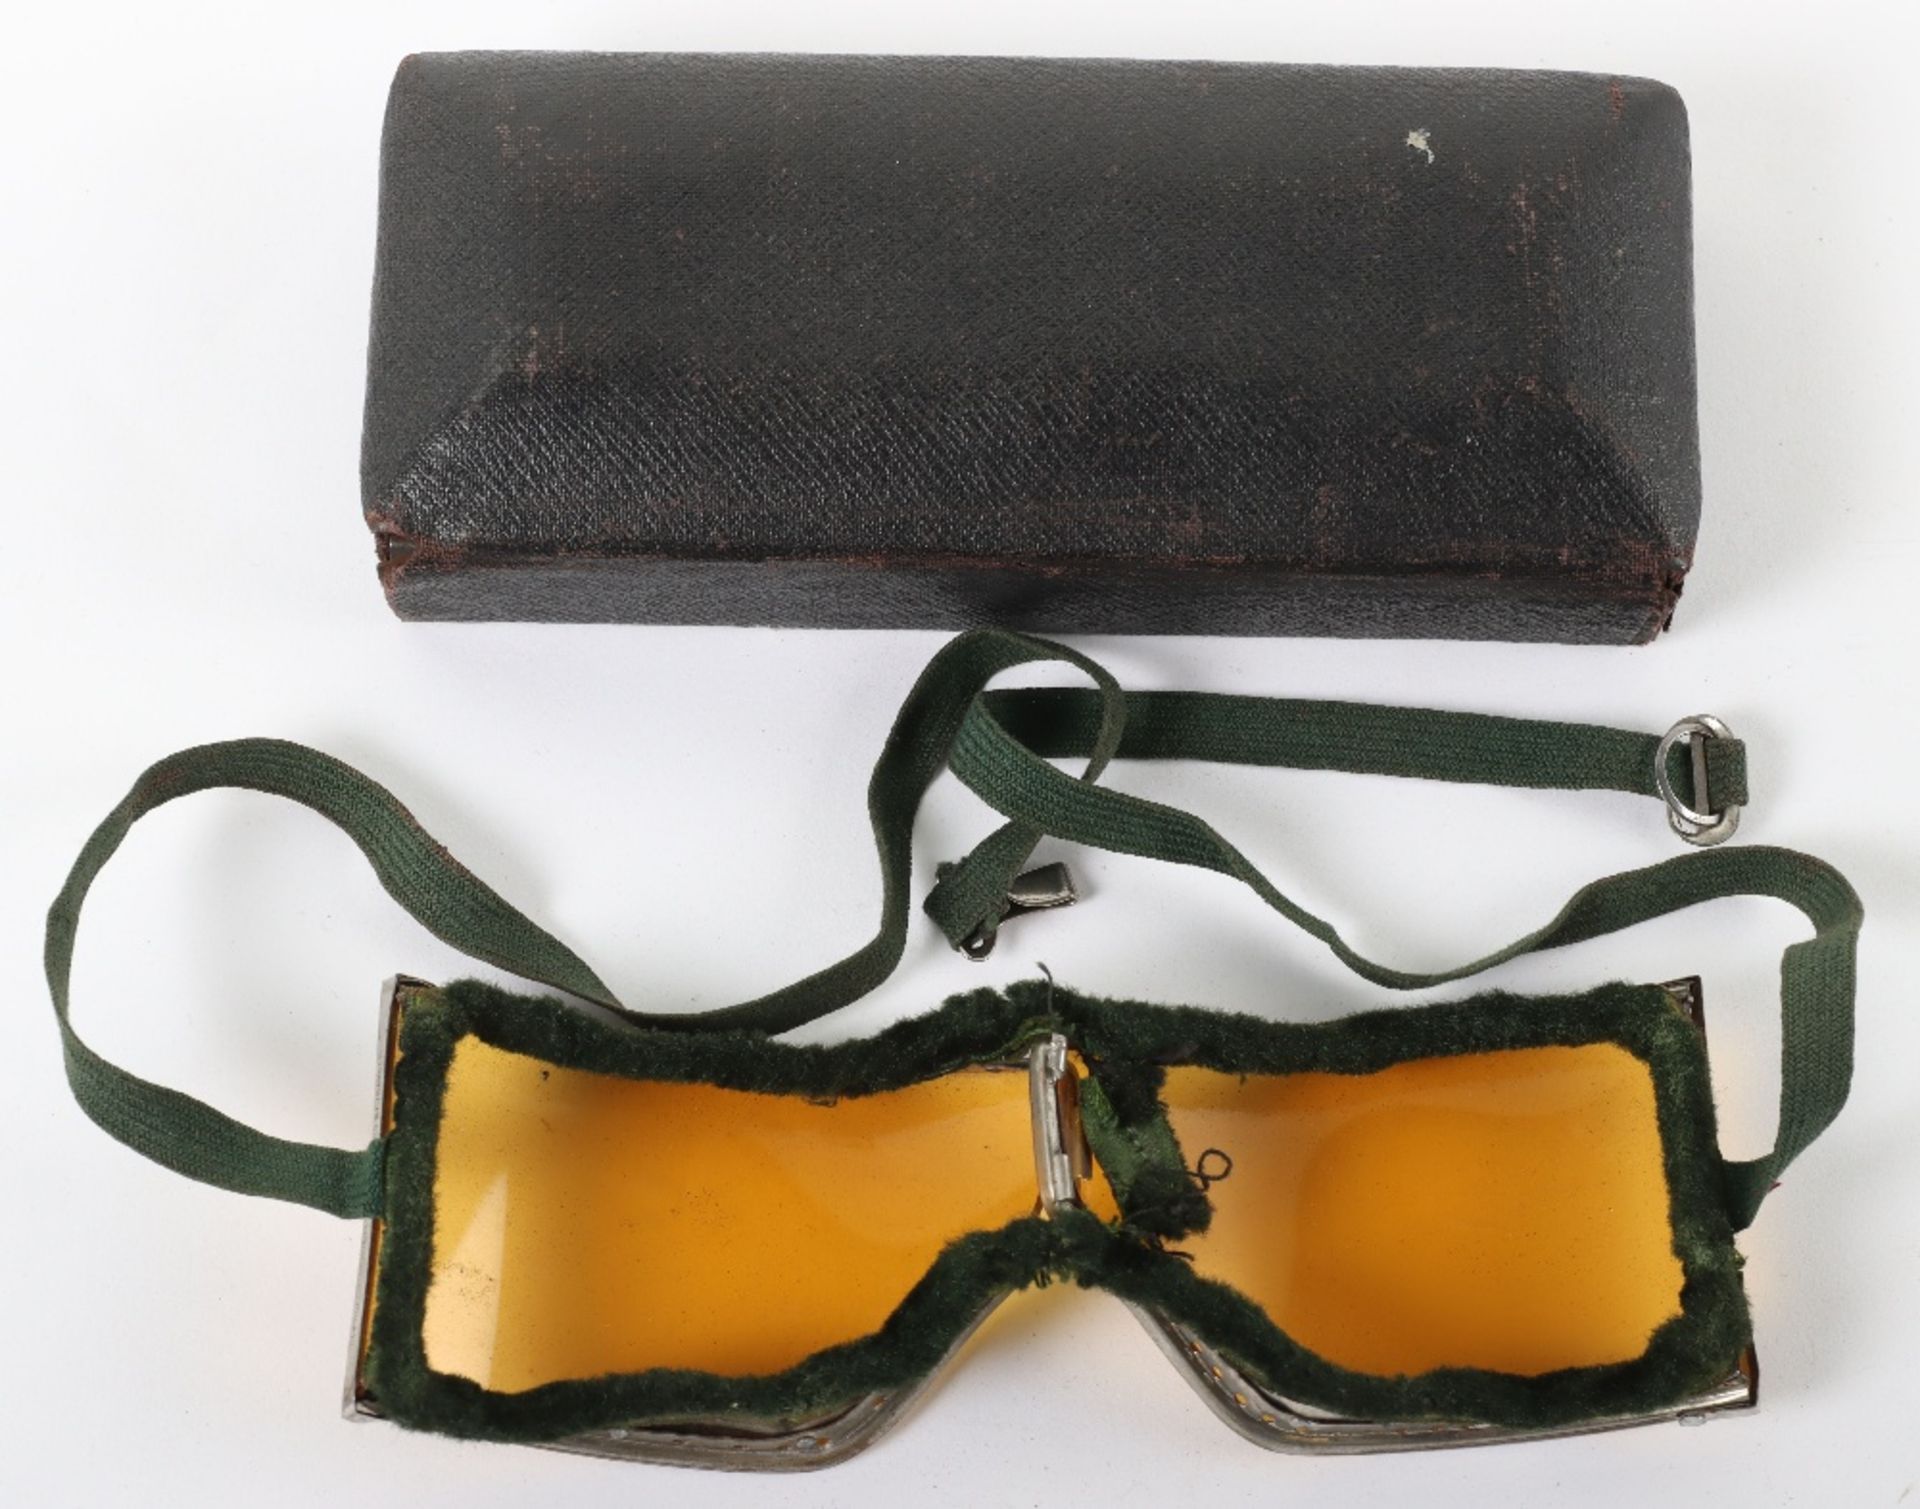 Pair of Vintage Peerless Motor Goggles - Image 2 of 5